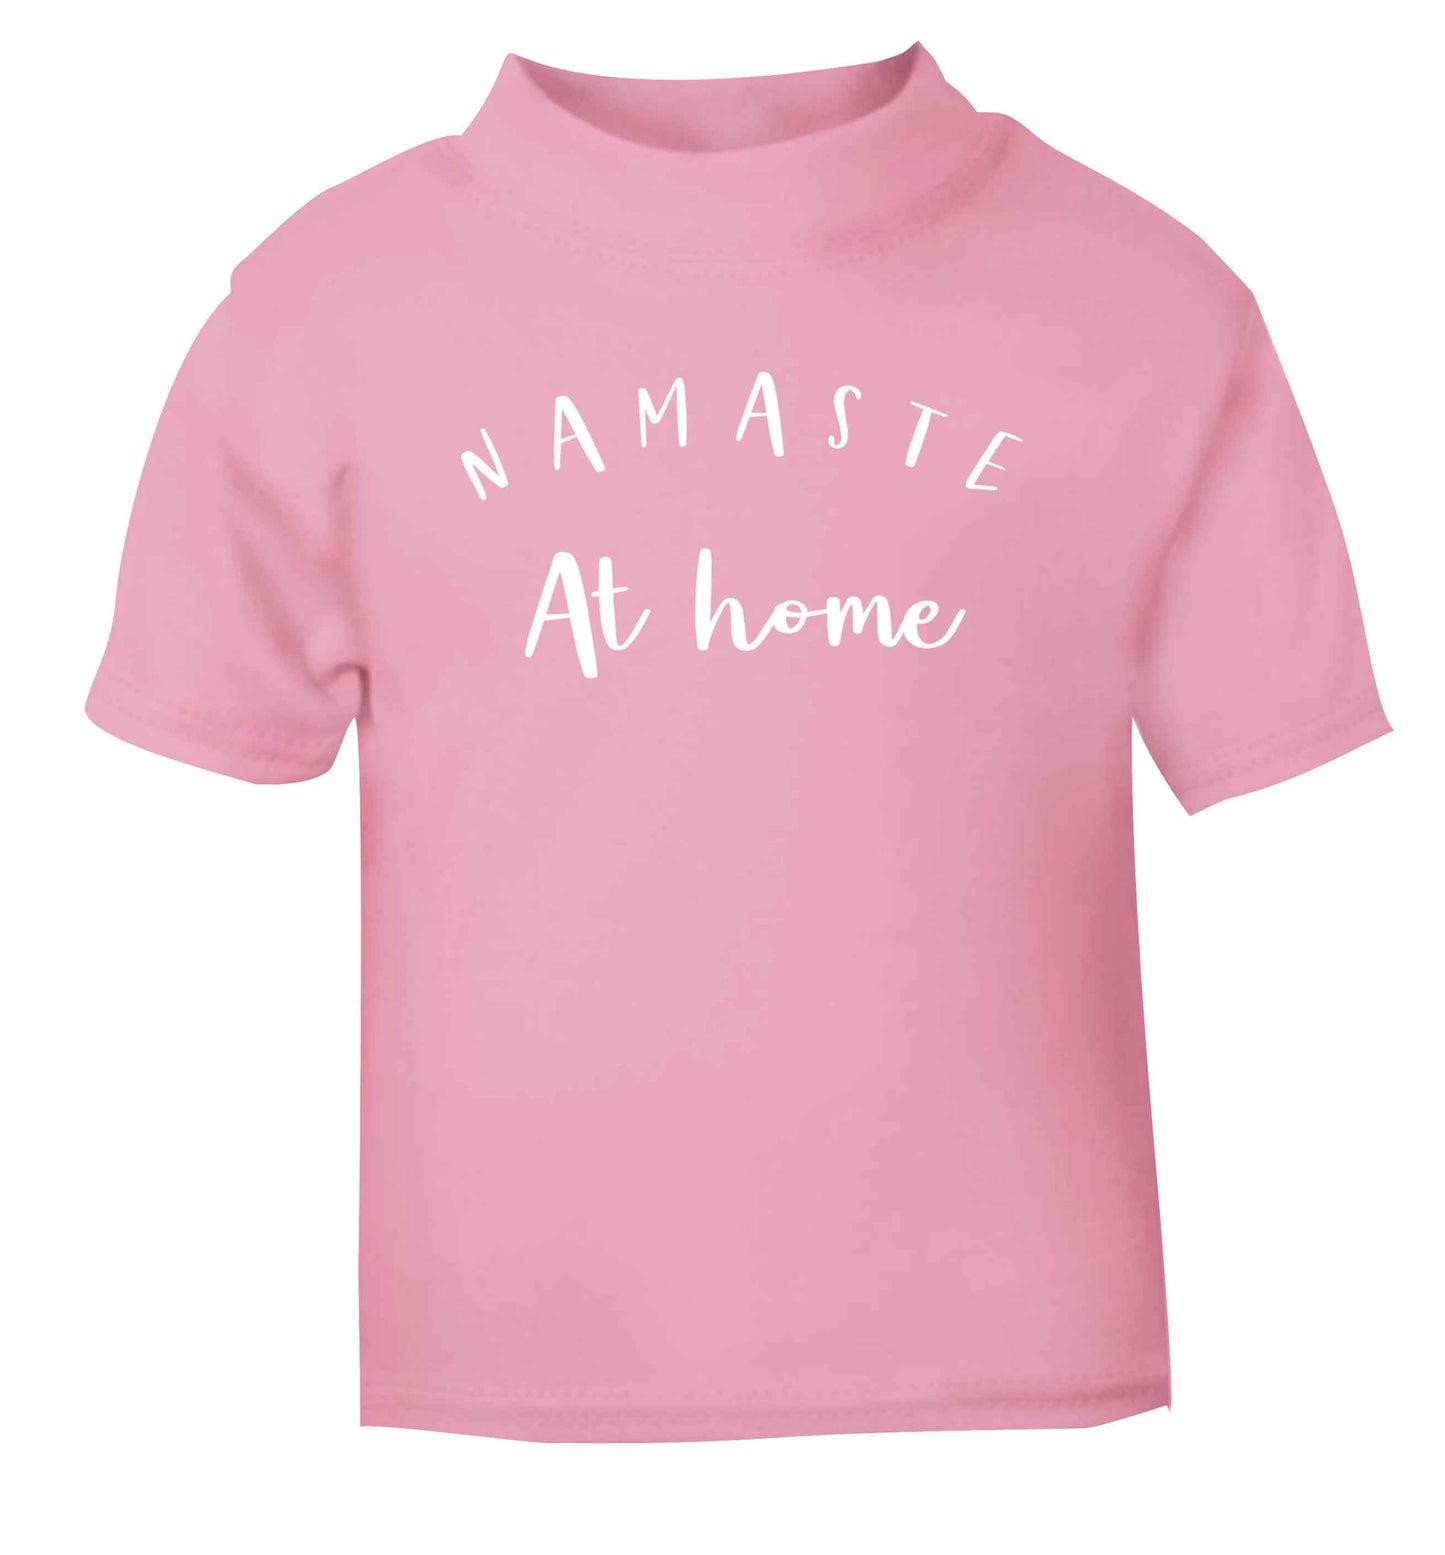 Namaste at home light pink Baby Toddler Tshirt 2 Years